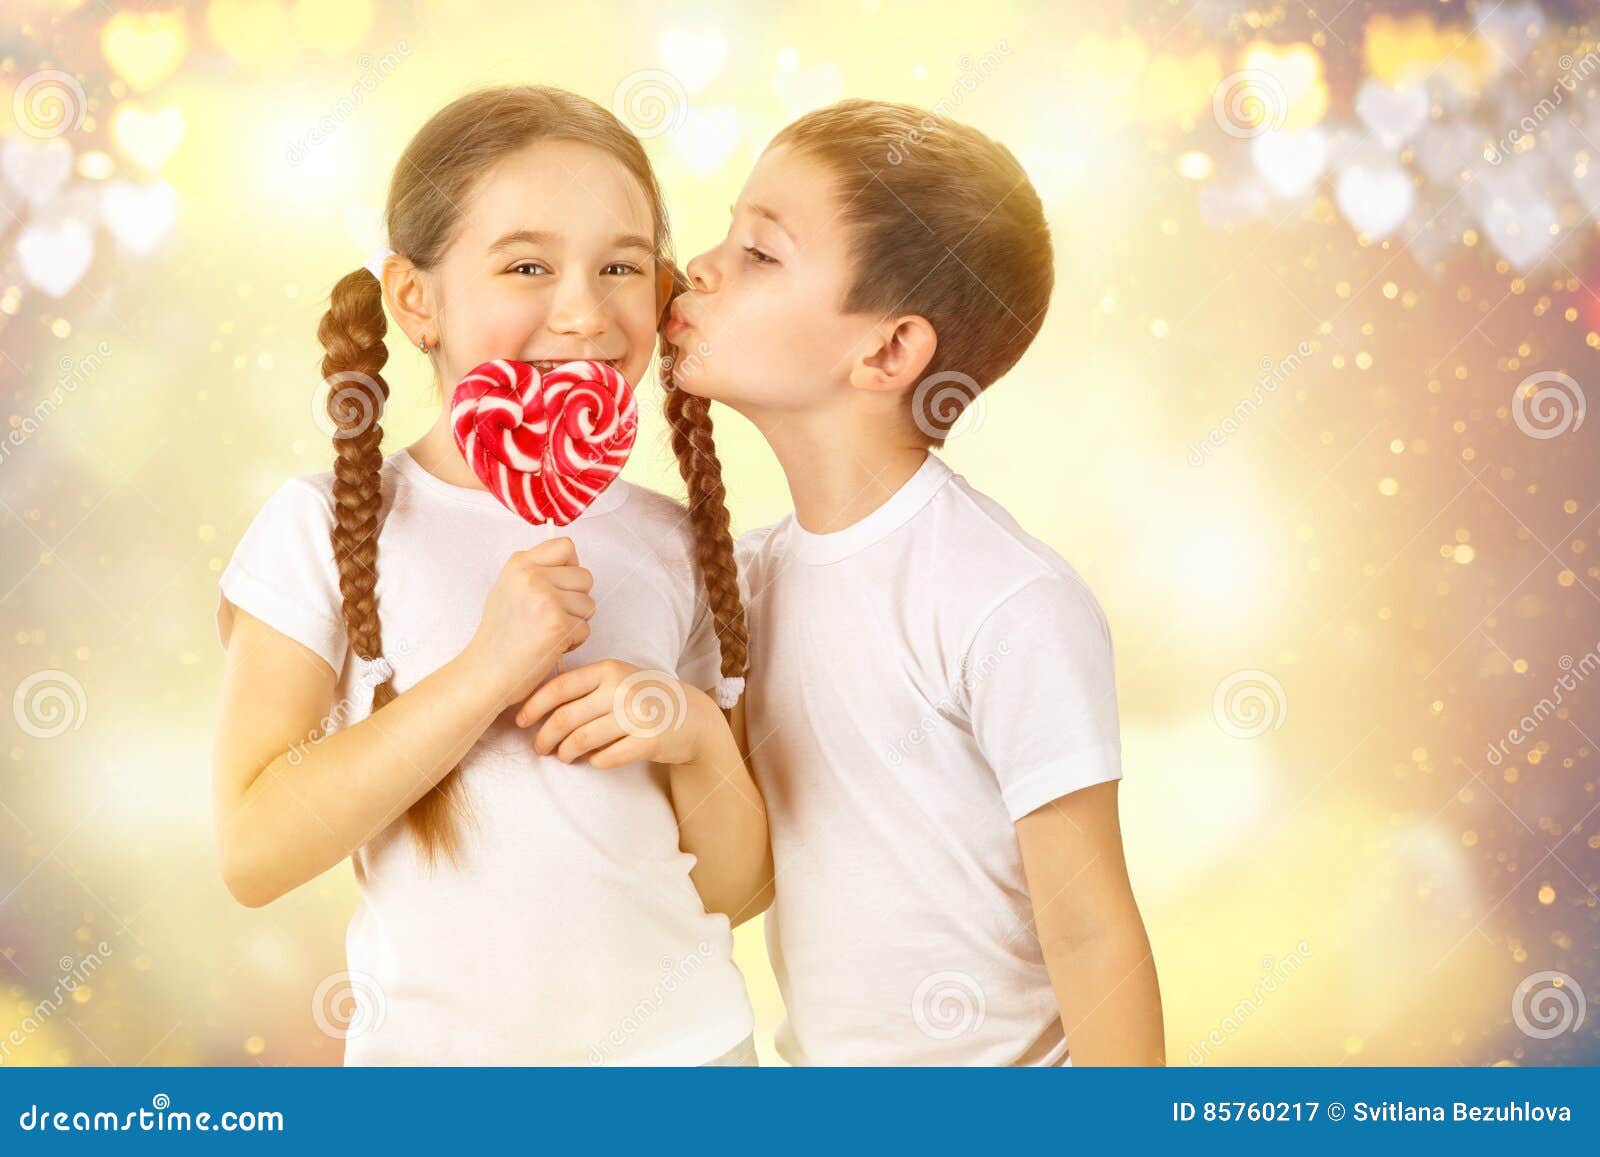 Boys kiss girls. Девочка целует конфету. Ребенок с карамелью. Мальчик целует маленькую девочку с леденцом сердечко.